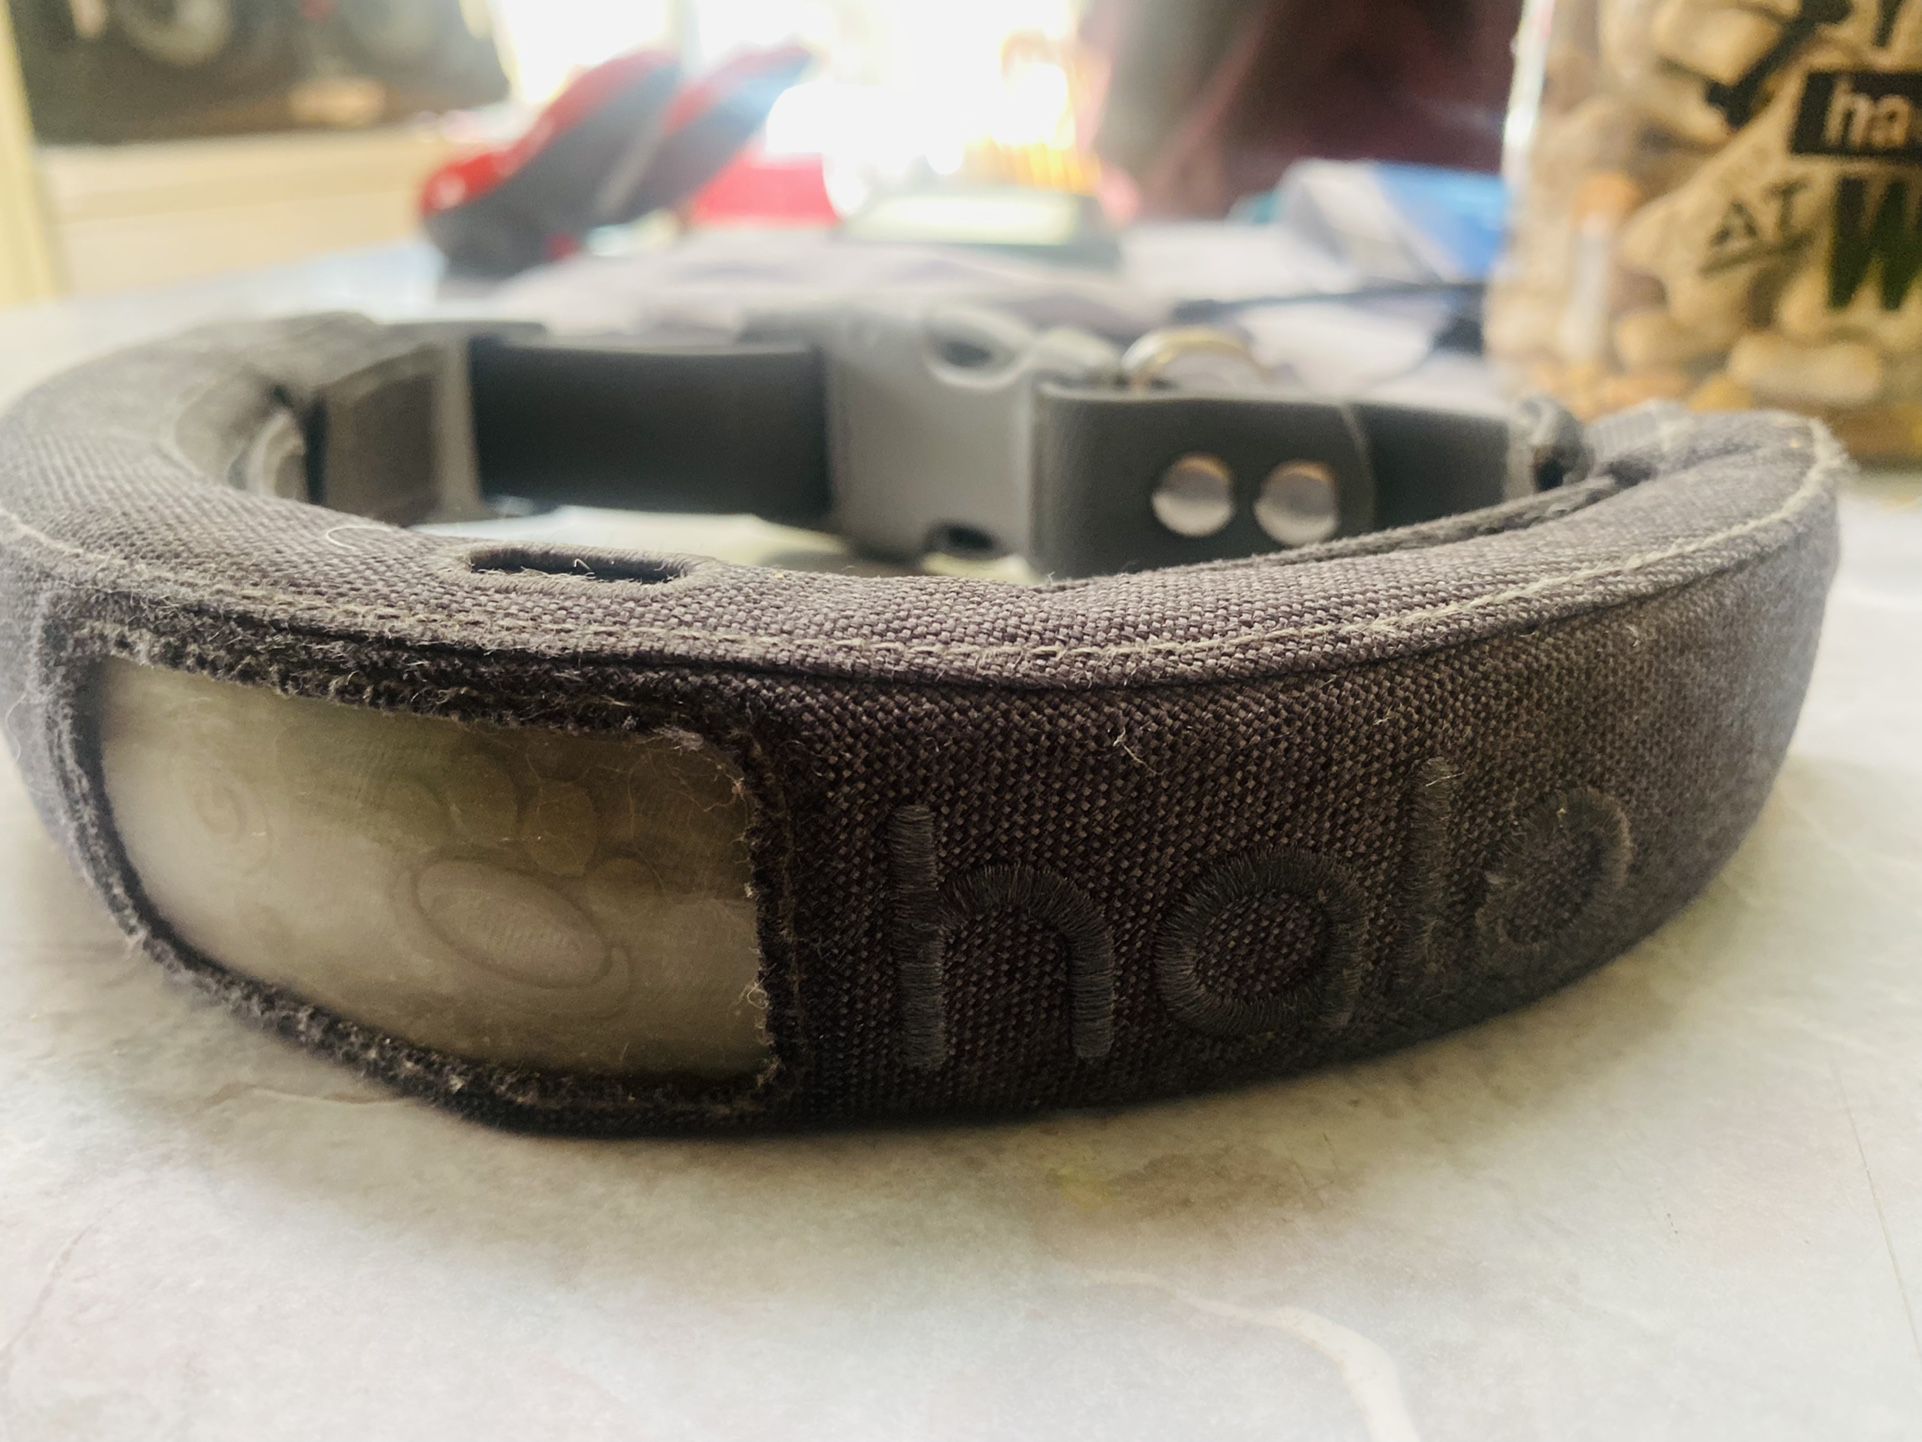 Halo GPS Dog Collar